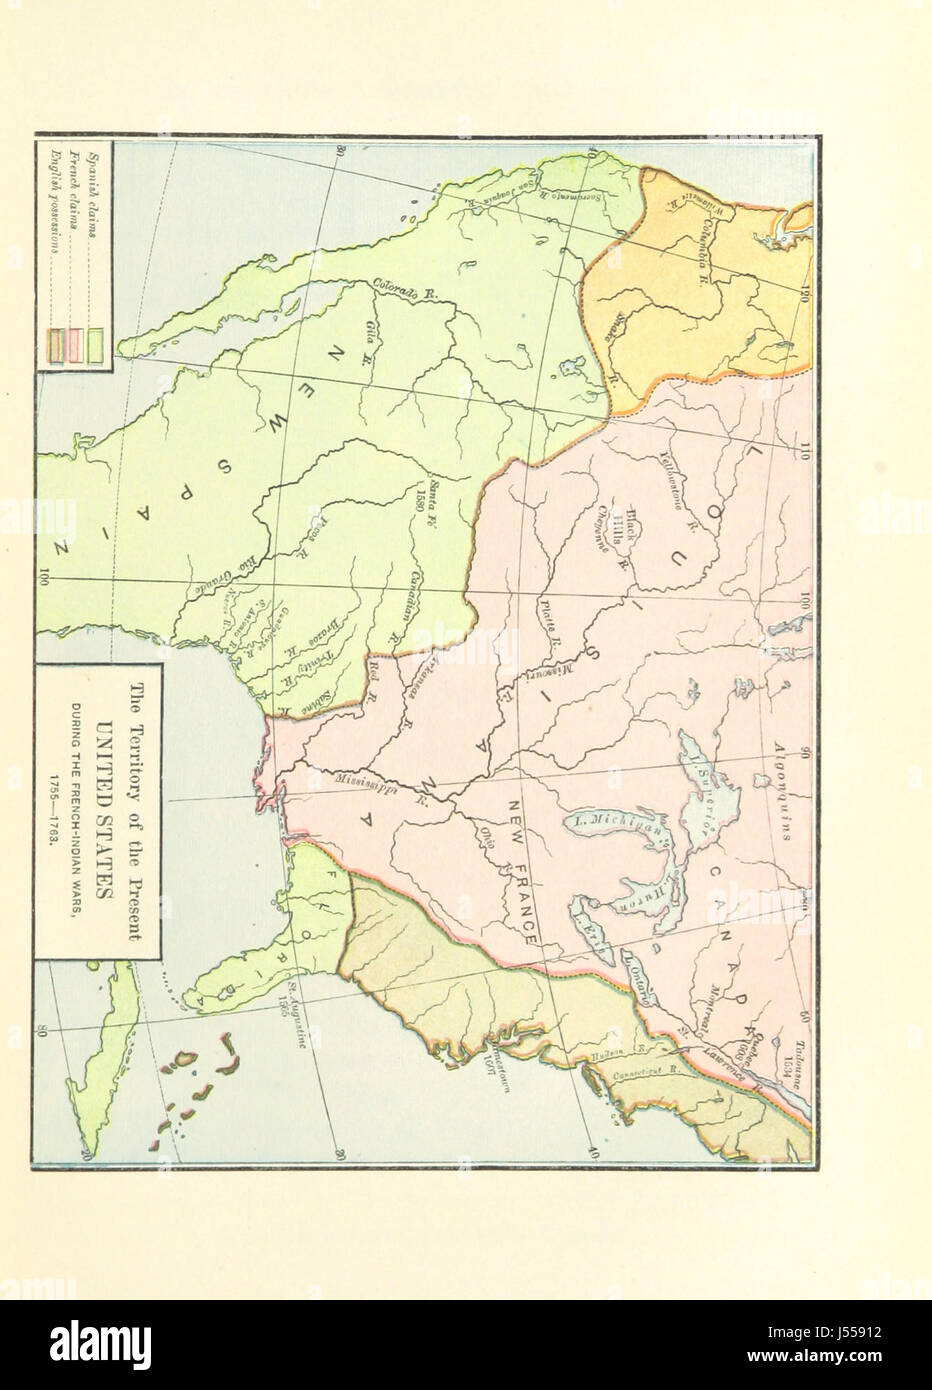 Bild von Seite 85 von "The Old Northwest, mit Blick auf die dreizehn Kolonien, wie durch die Royal Charter konstituiert" Stockfoto